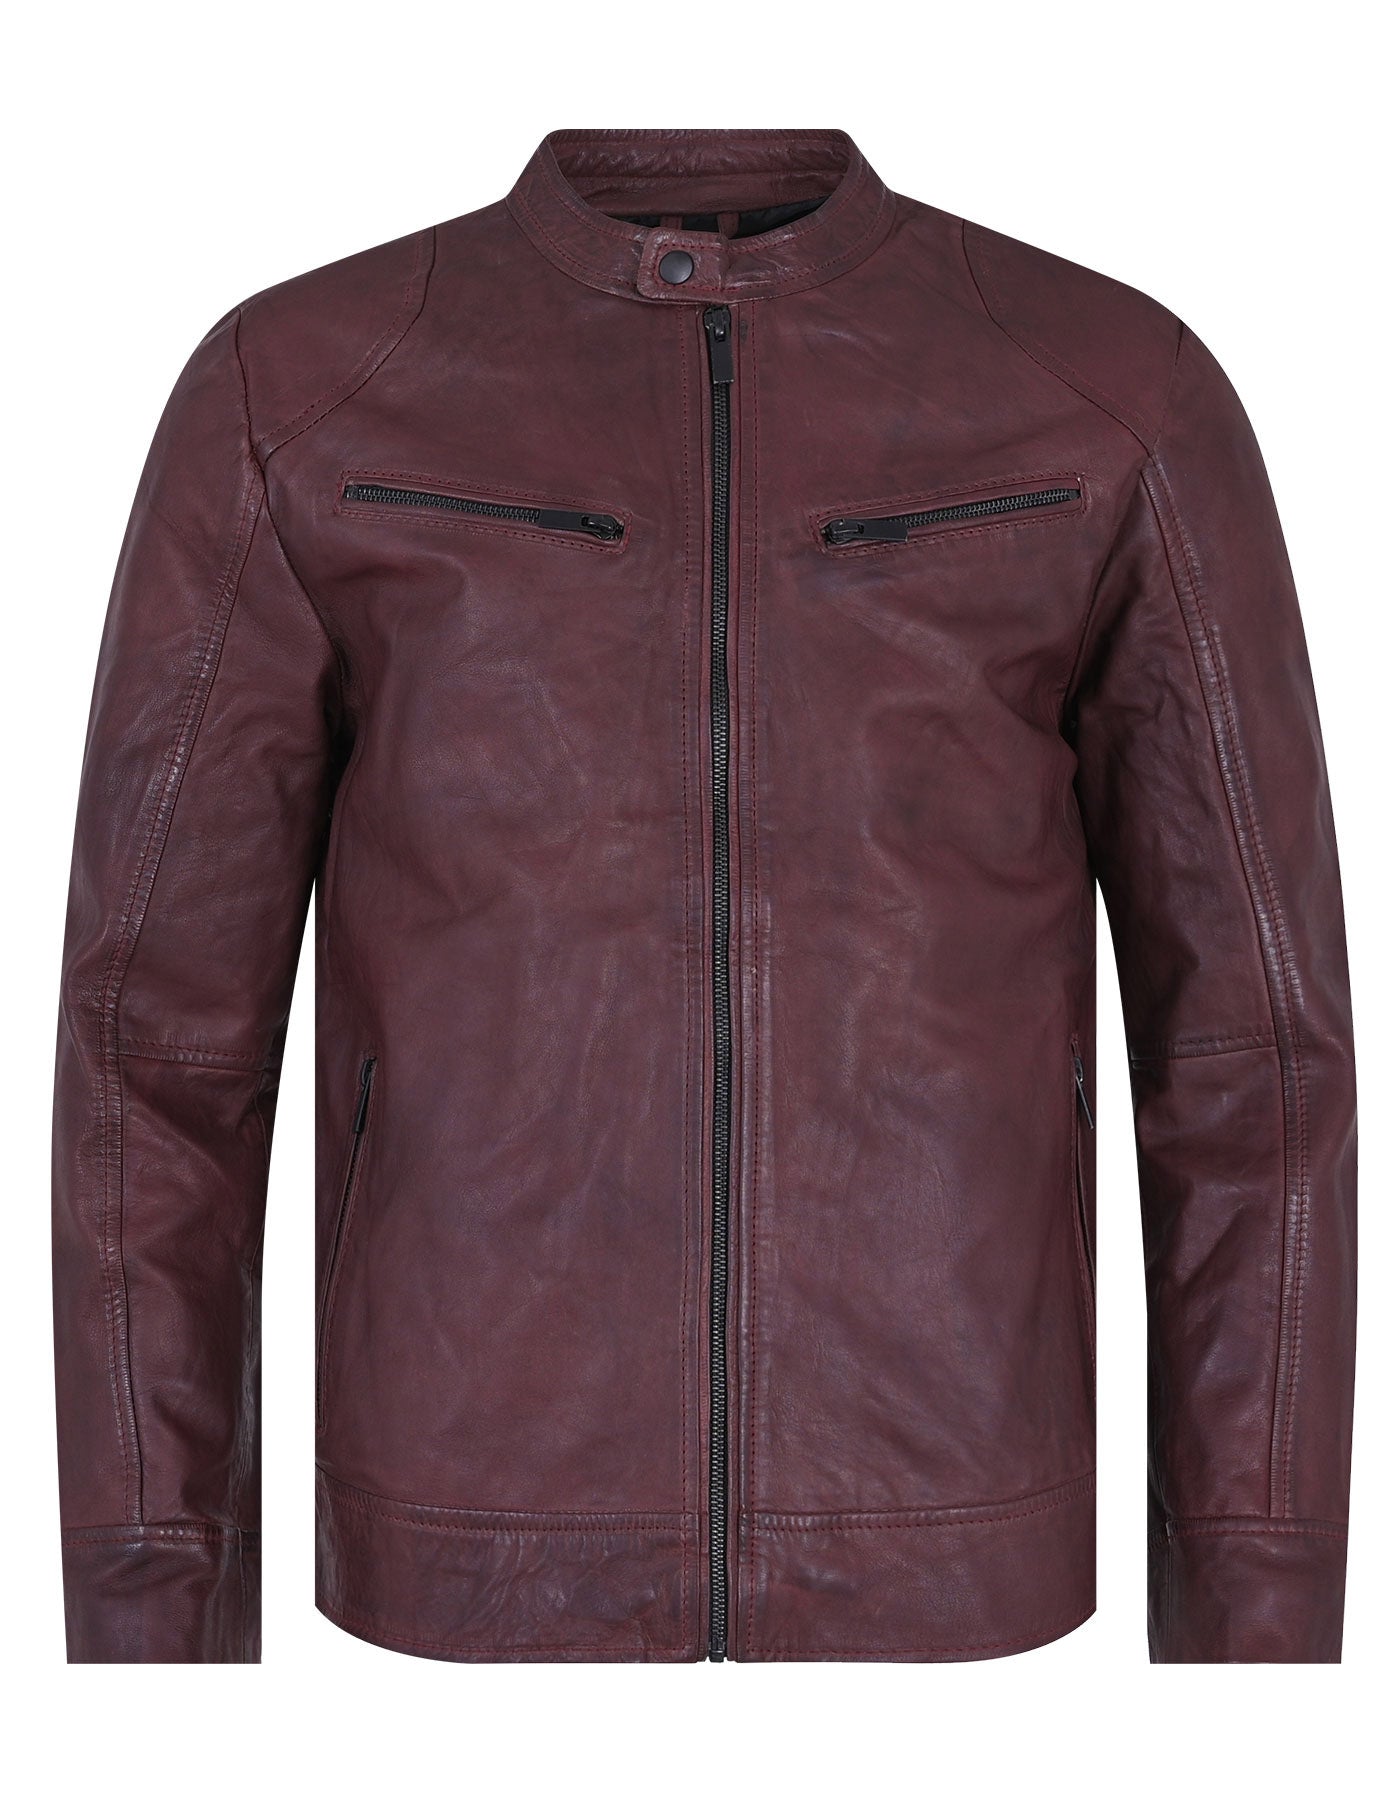 Furioc Maroon Plain Leather Biker Jacket